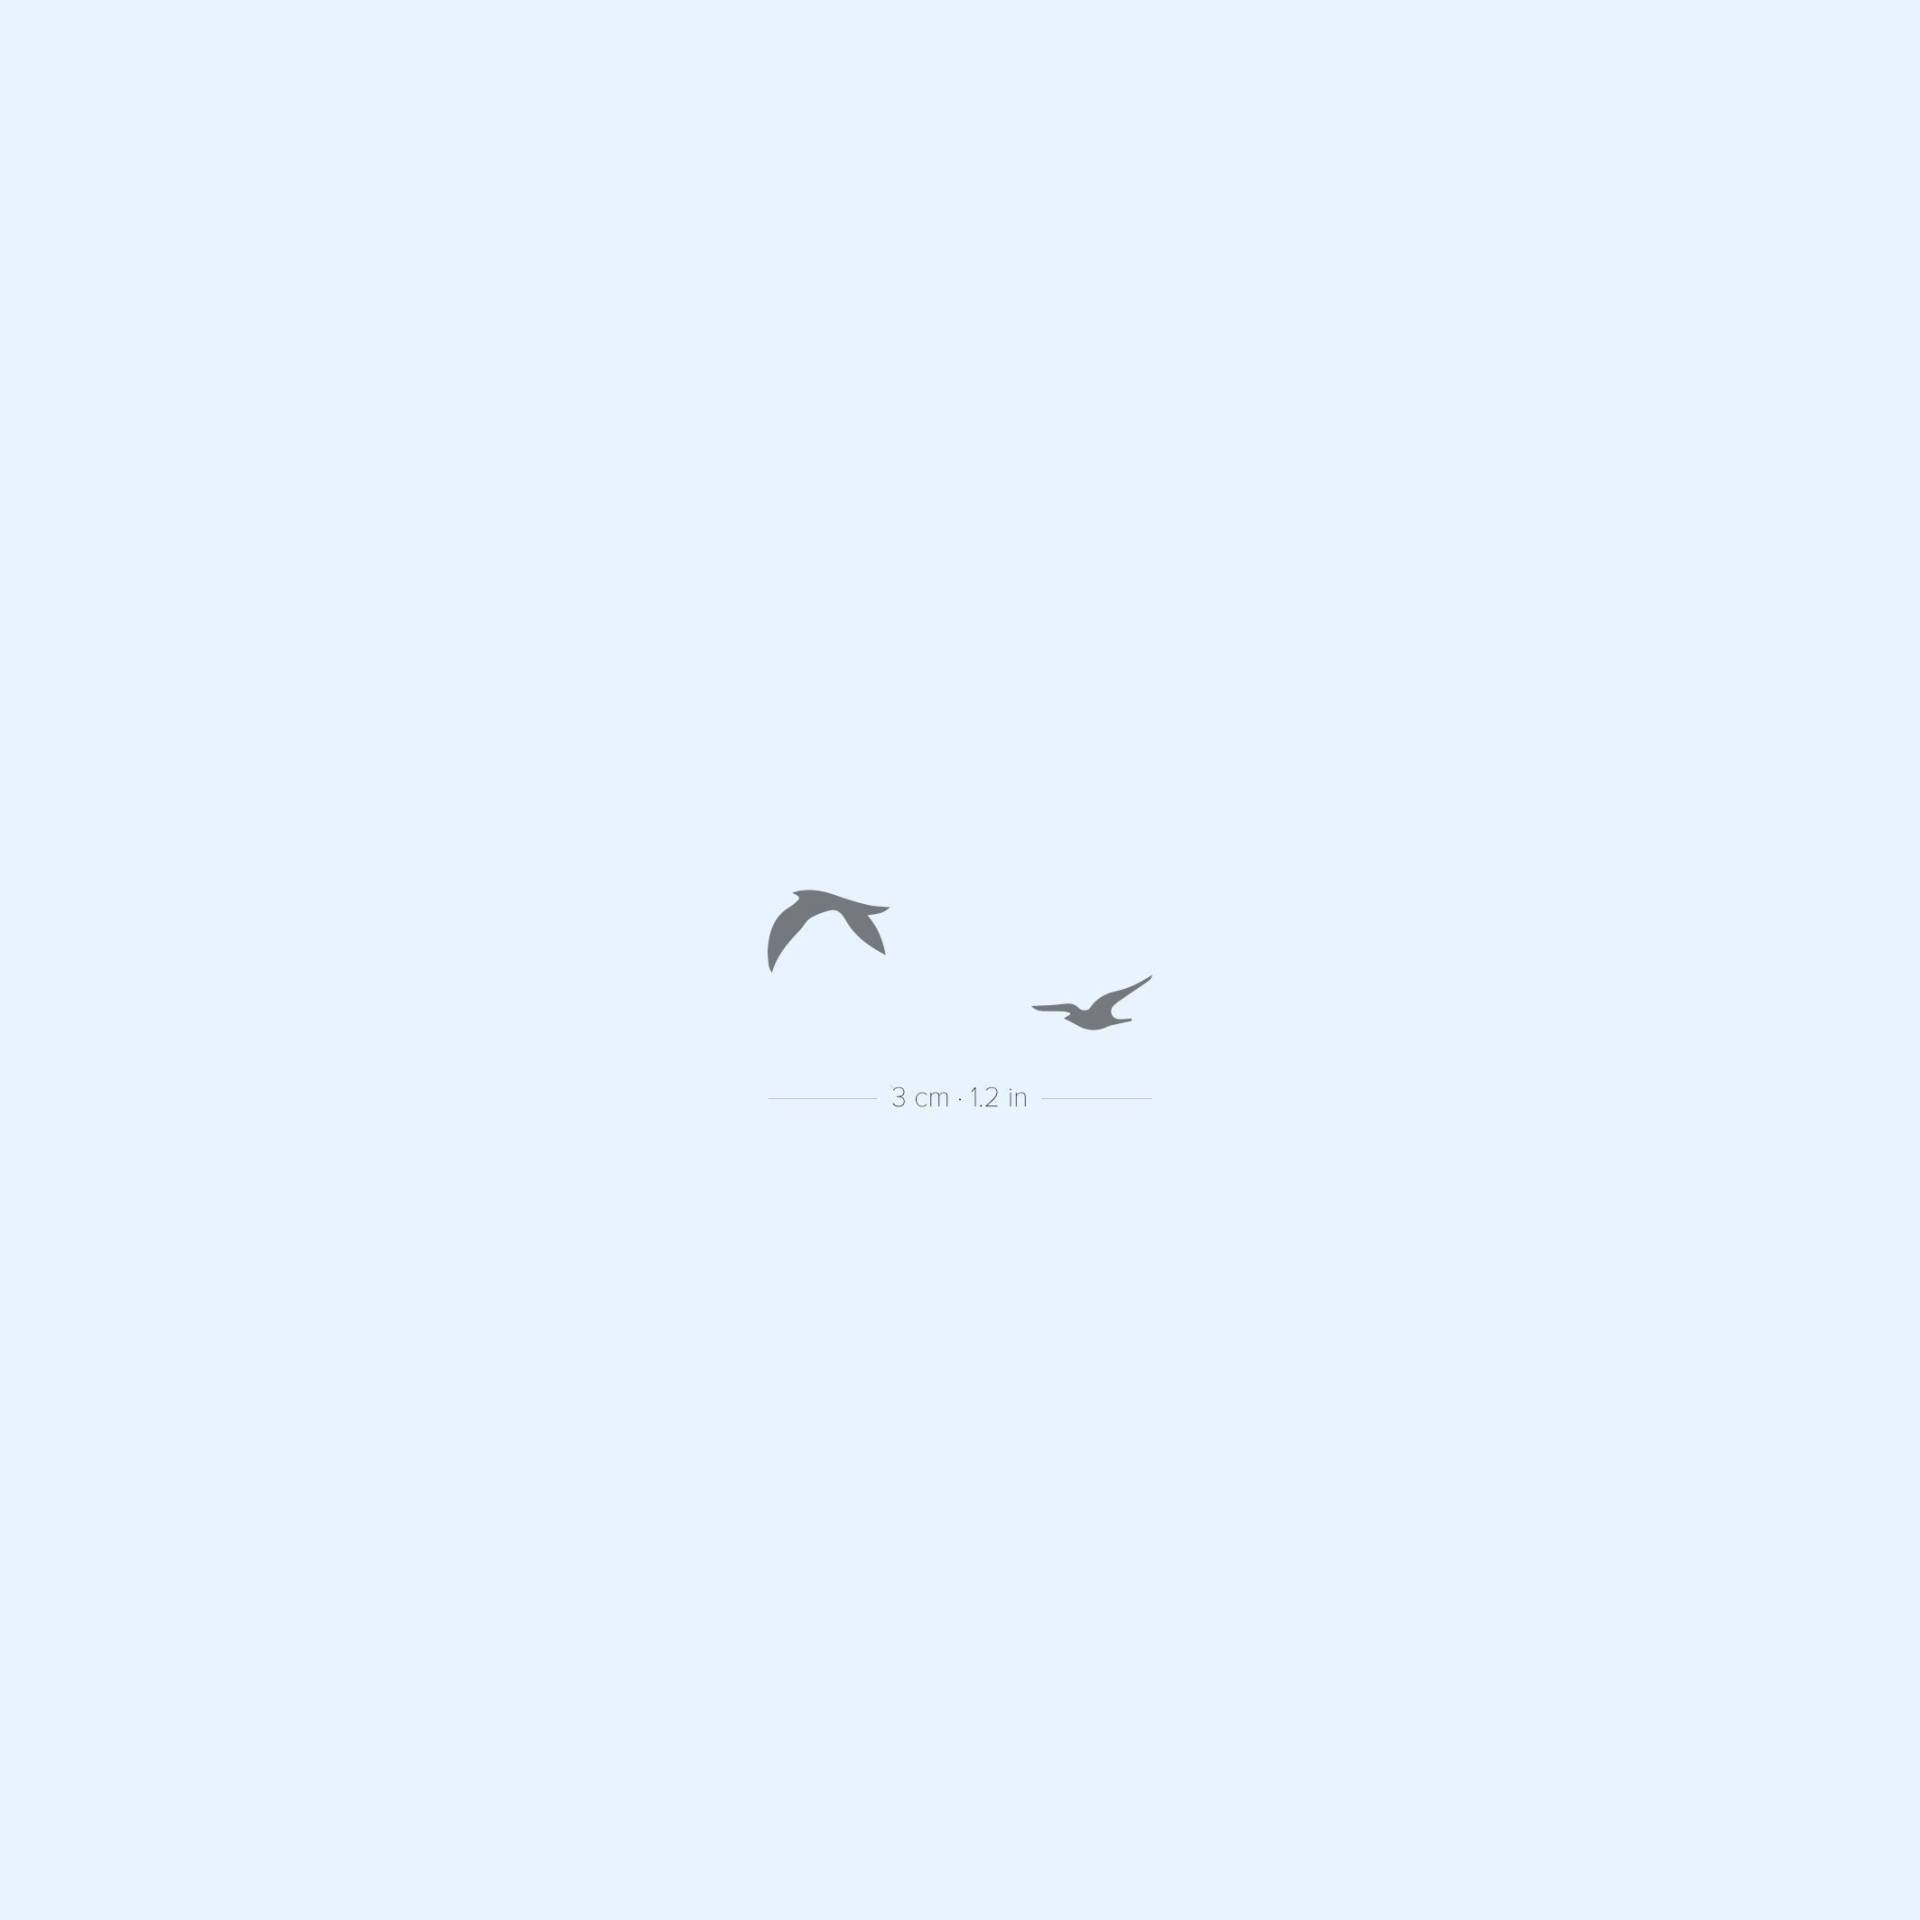 Zwei Fliegende Vögel Semi-Permanent 2-Wochen Tattoo | 2Er Set von Etsy - twoweektattoos